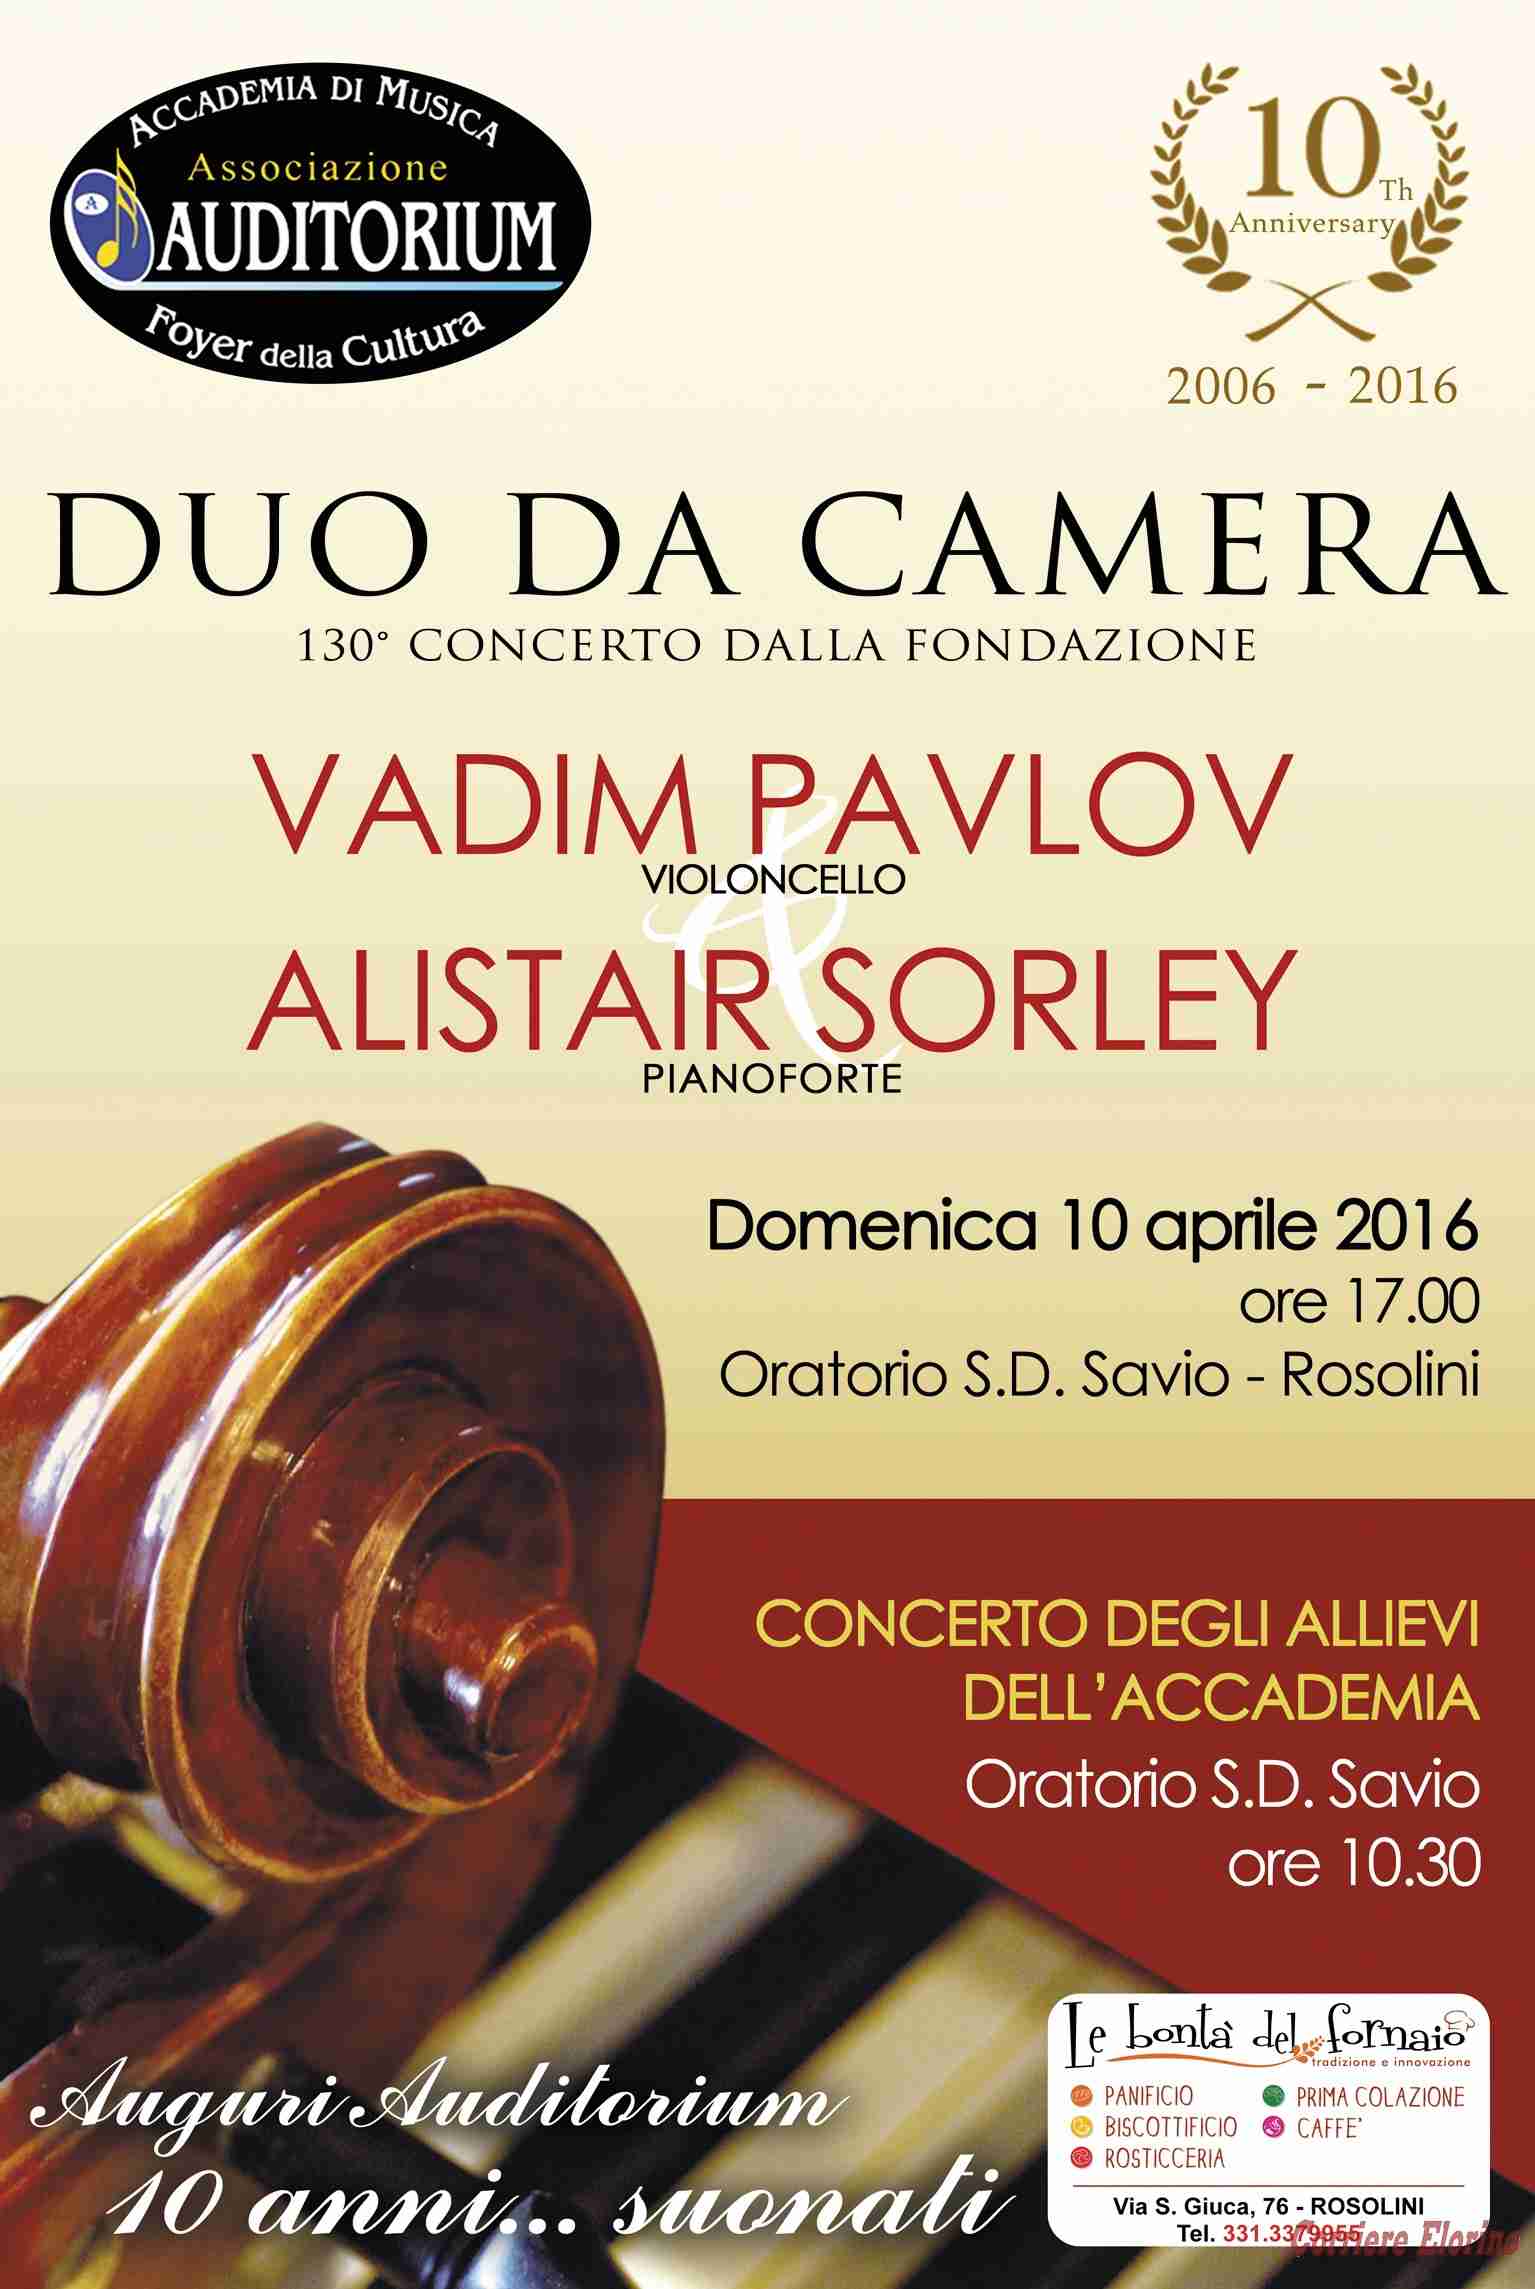 10th anniversary “Auditorium”, il 10 aprile il concerto del duo Vadim Pavlov- Alistair Sorley